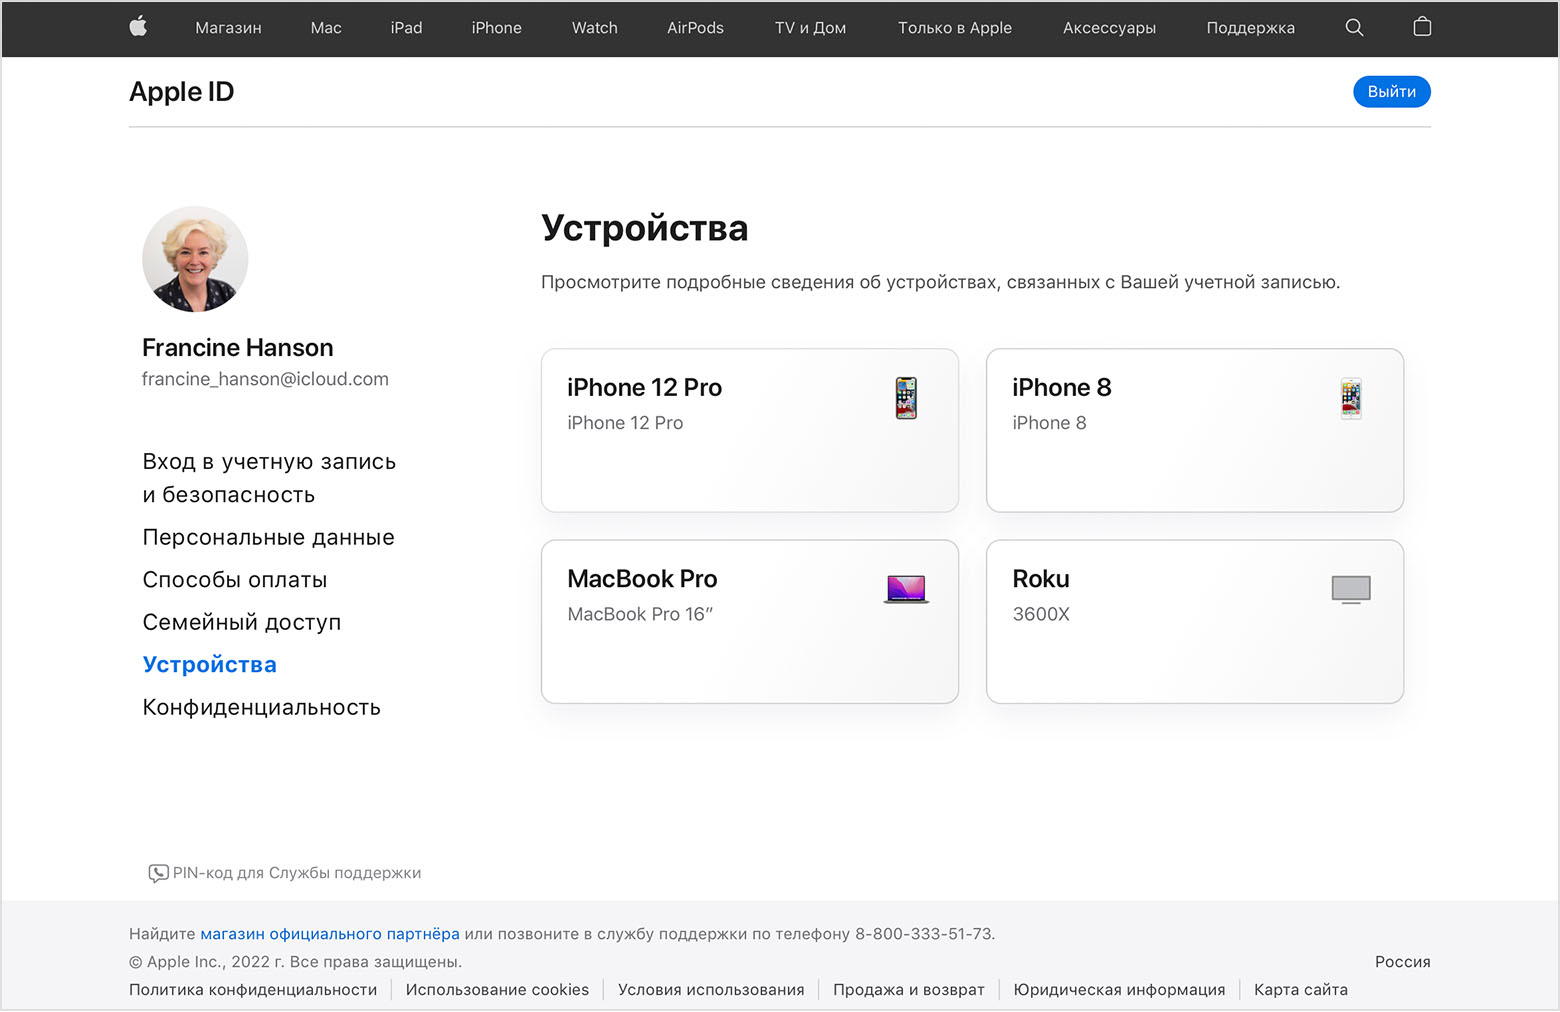 Изображение страницы appleid.apple.com, на которой перечислены три устройства пользователя Francine Hanson: iPhone 12 Pro, MacBook Pro и Roku.